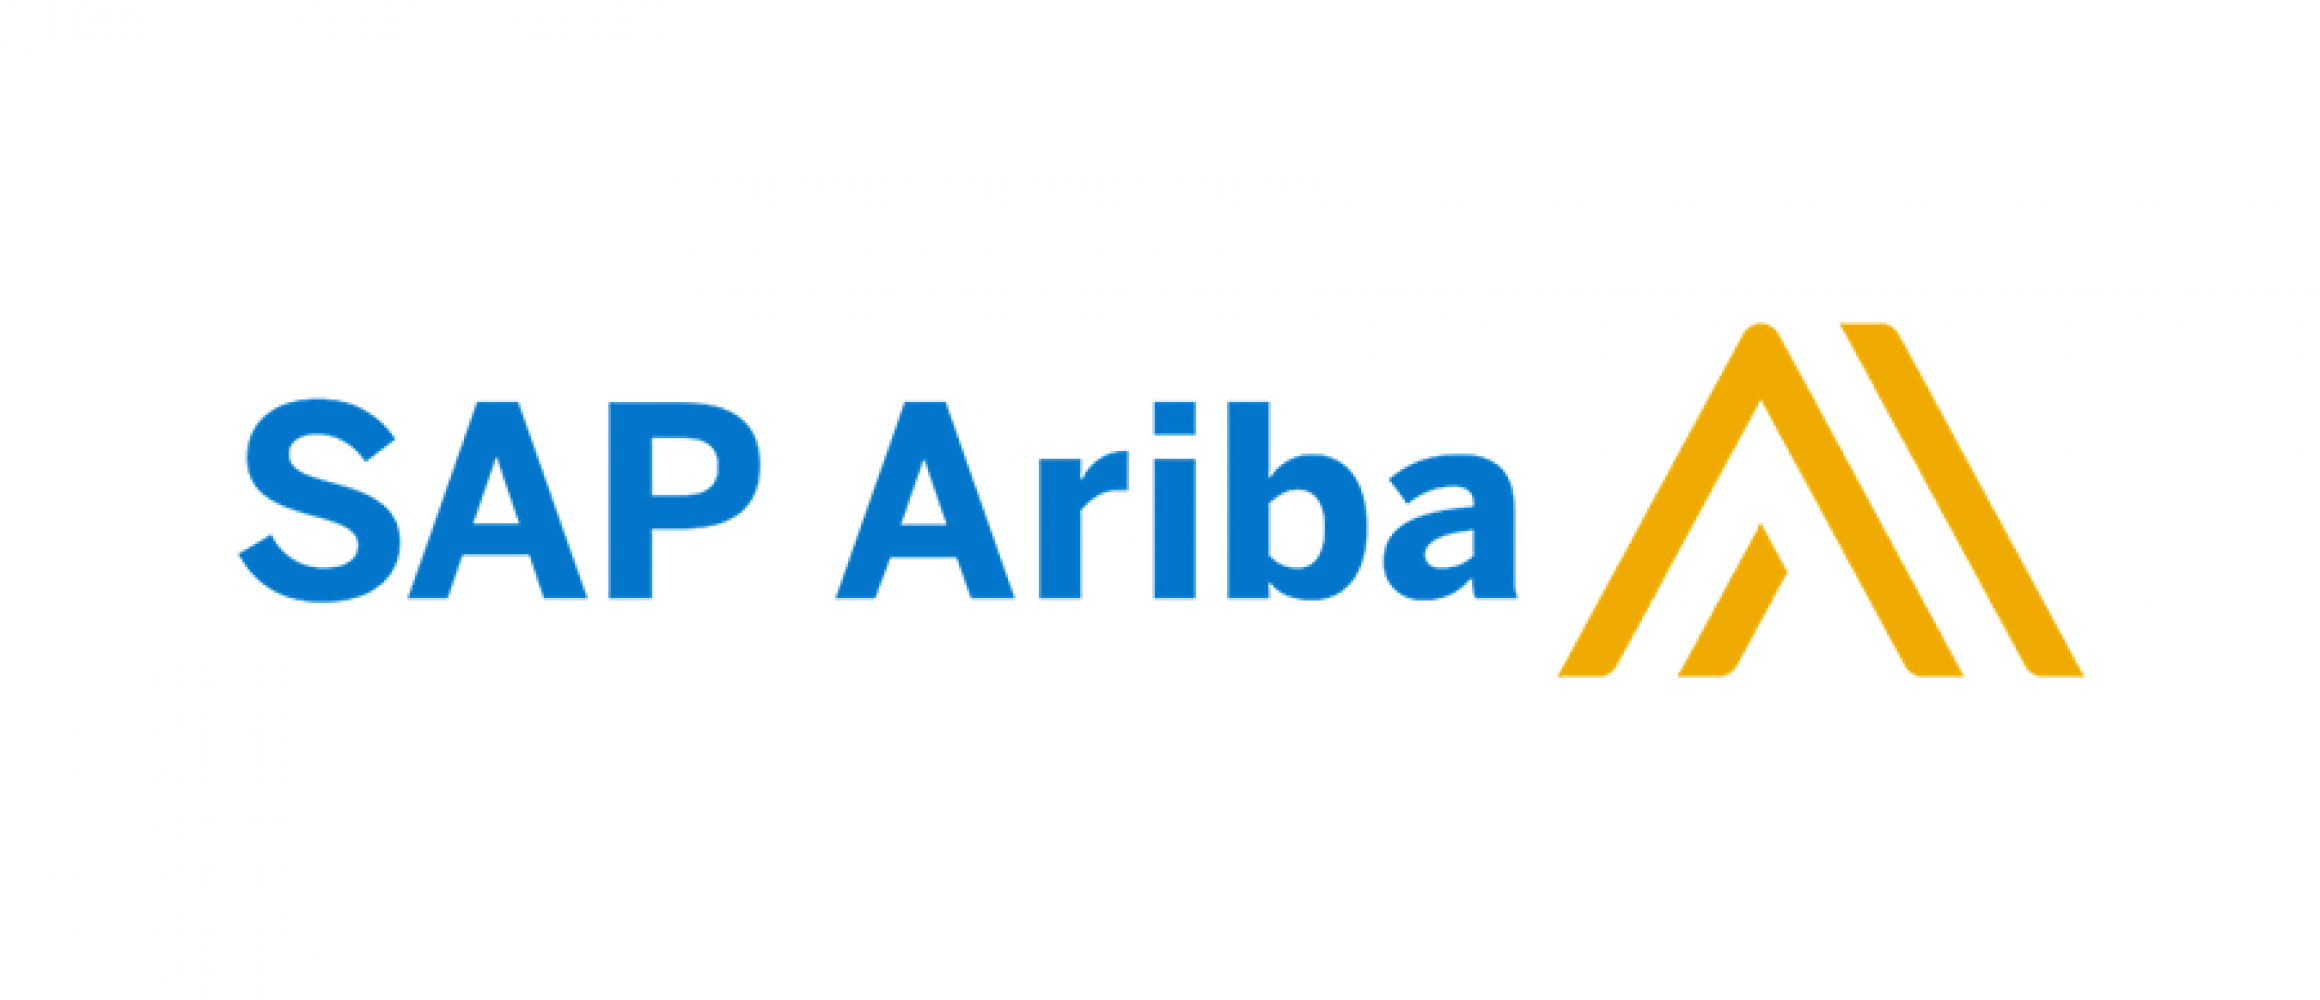 sap ariba network